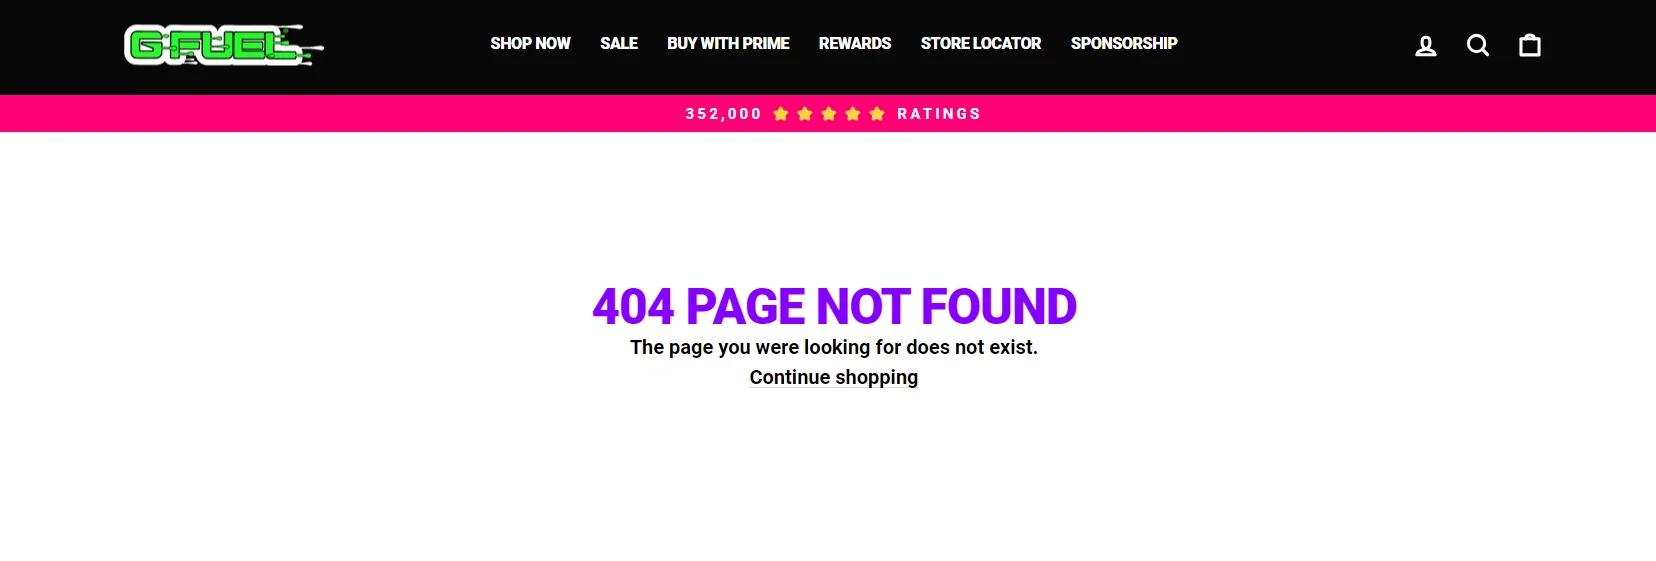 G-Fuel 网站上显示一条错误消息：“404 PAGE NOT FOUND 您正在查找的页面不存在。”